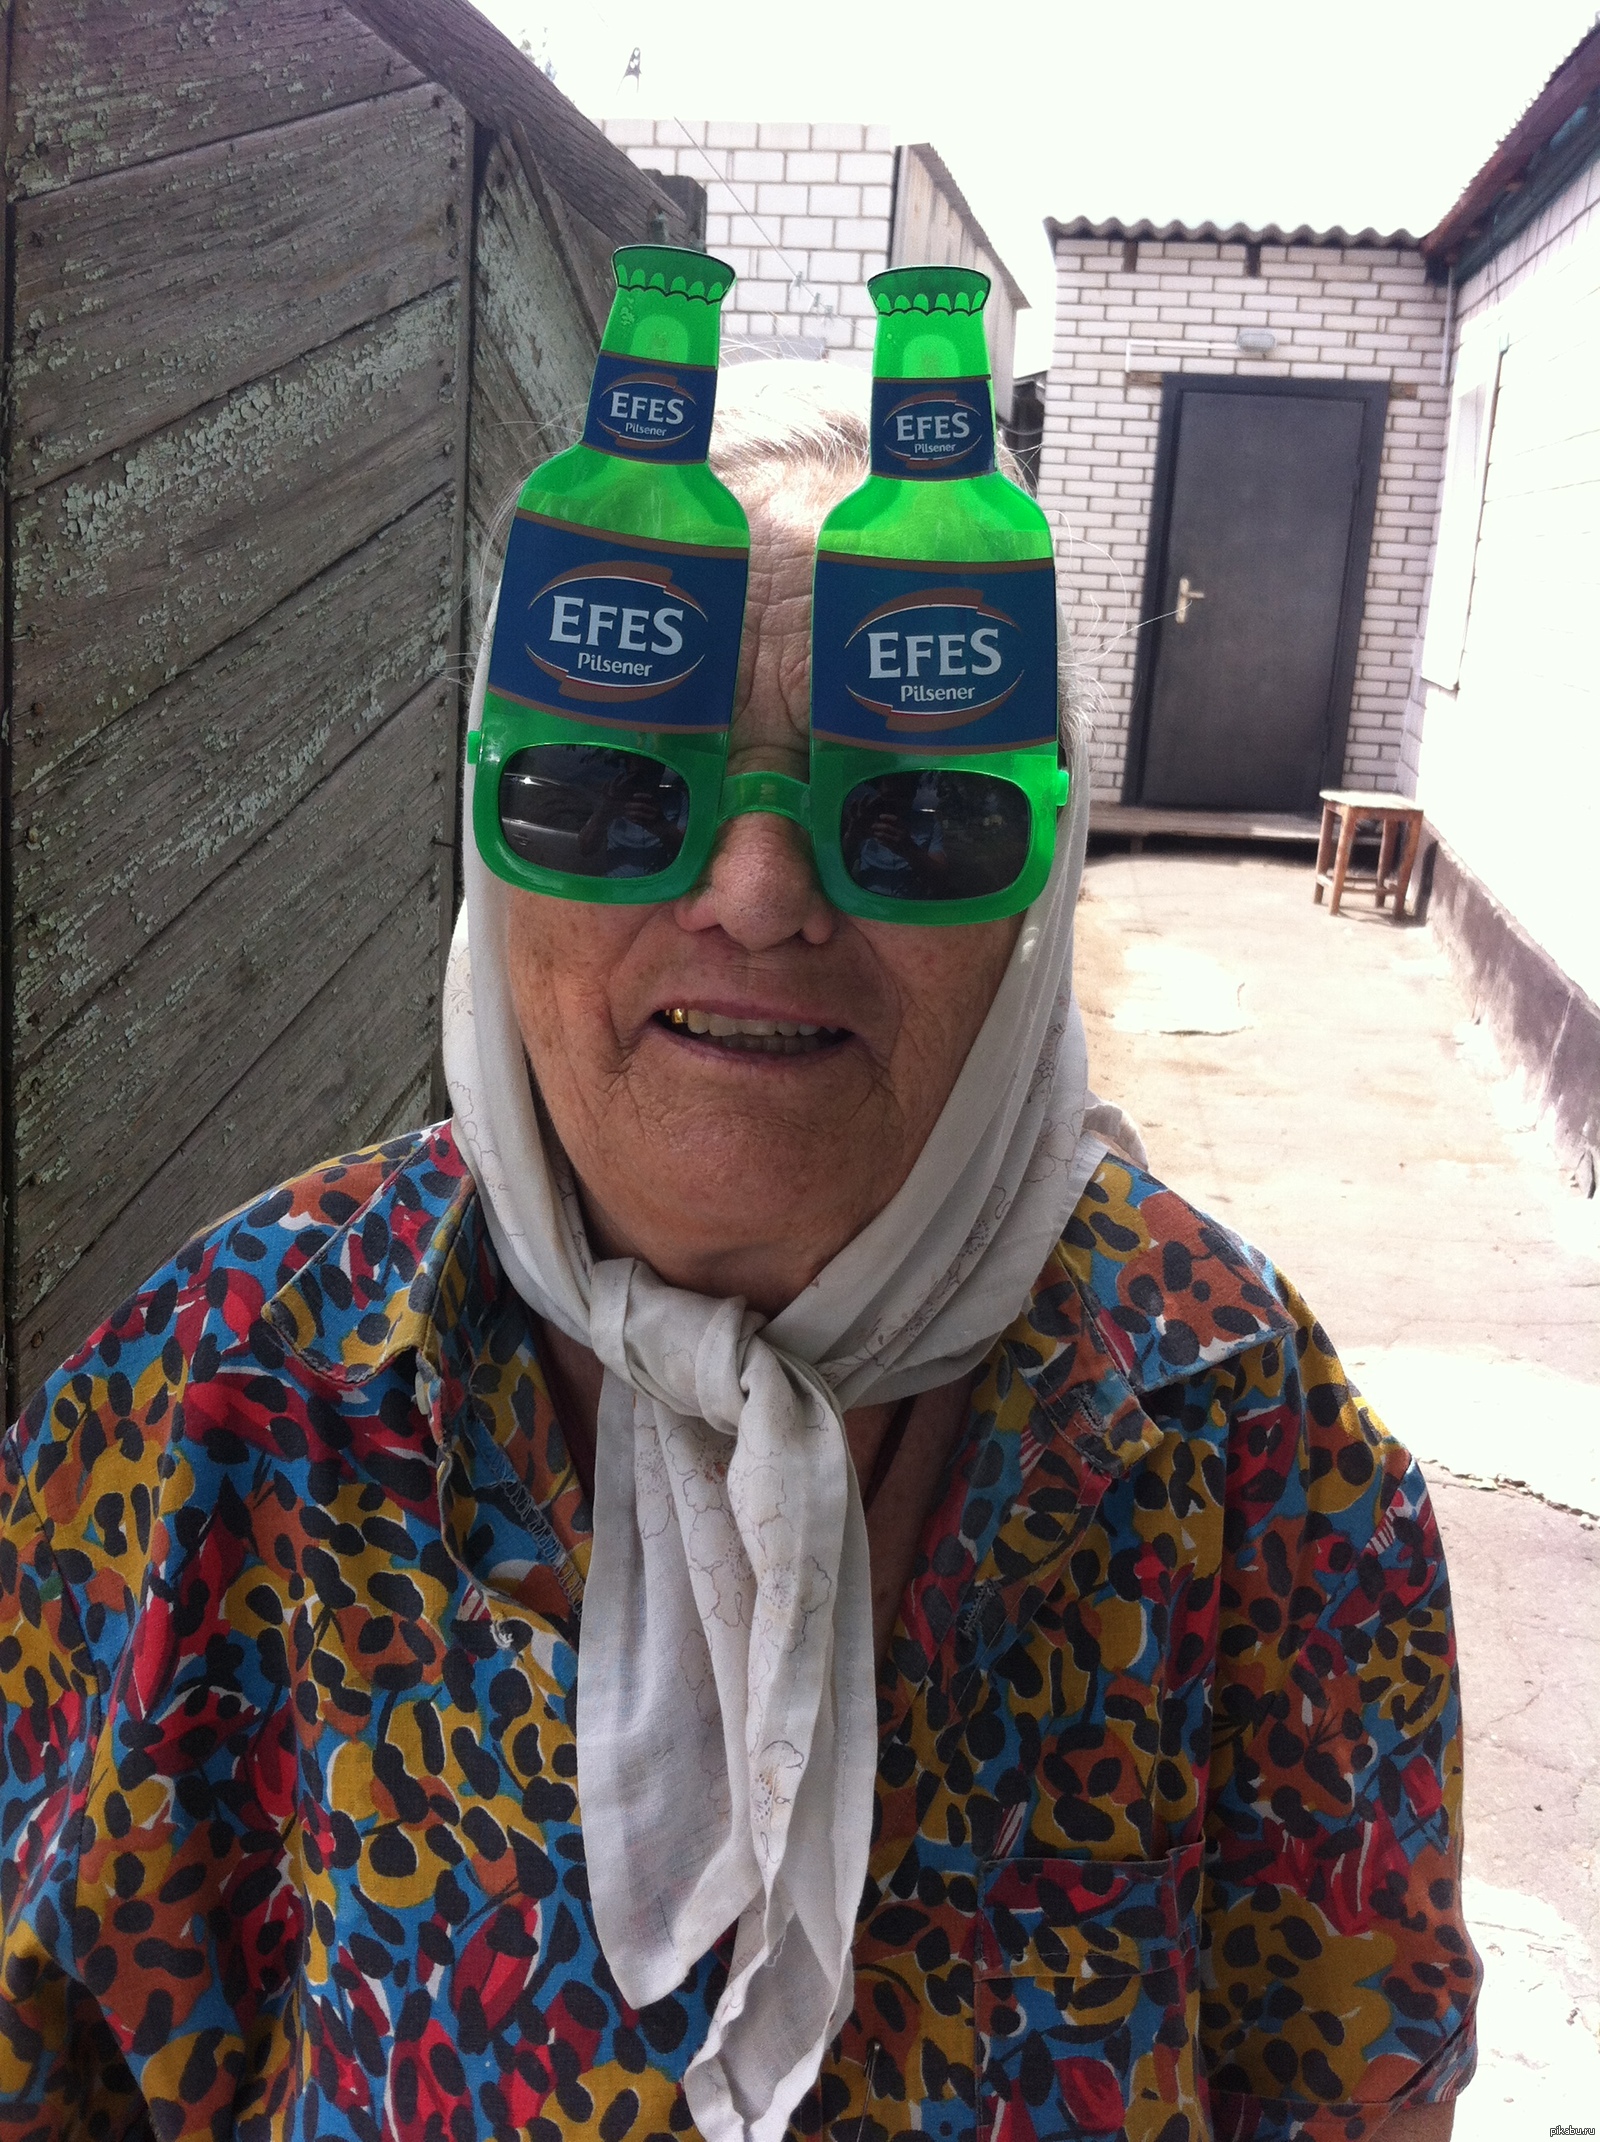 Бабки фонк. Бабуля в очках. Веселая бабушка в очках. Смешная бабка в очках. Угарные очки.